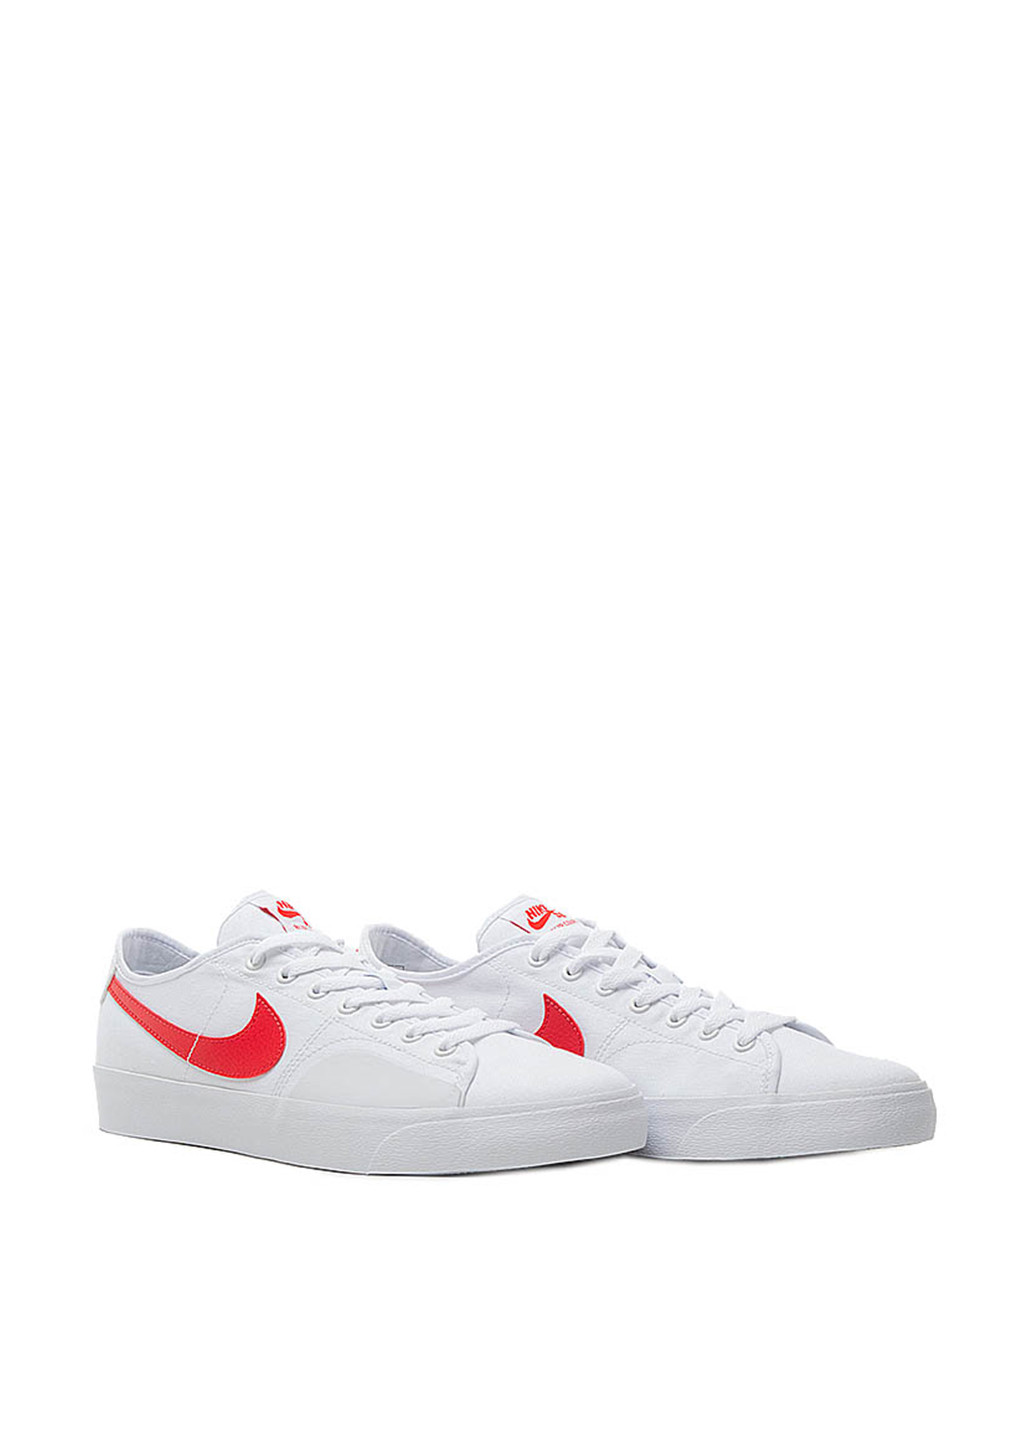 Белые кеды Nike Nike SB Blazer Court с логотипом, с белой подошвой